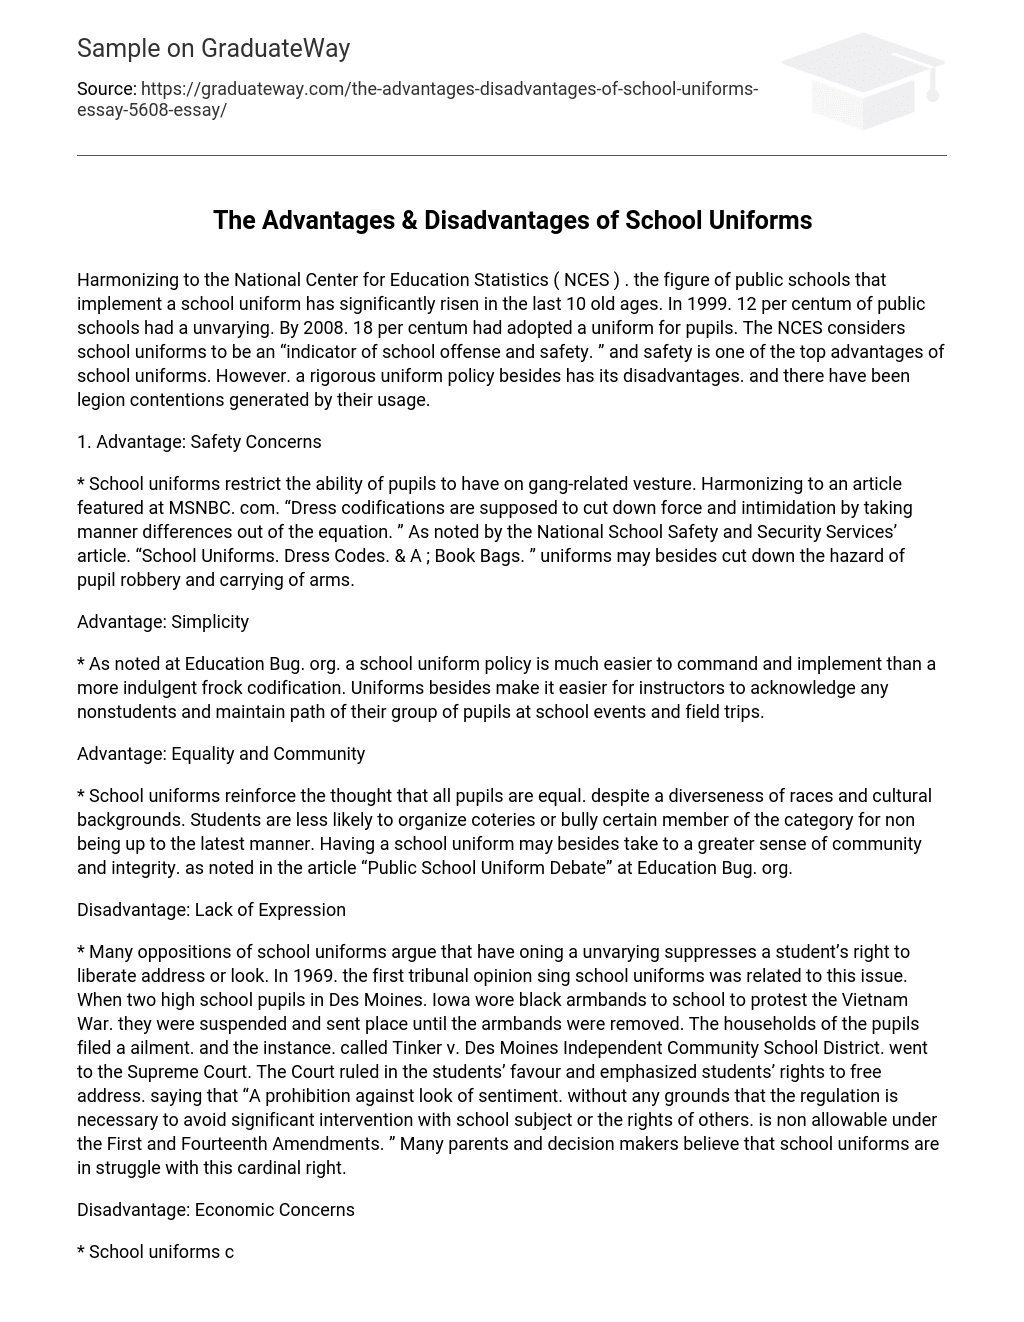 The Advantages & Disadvantages of School Uniforms